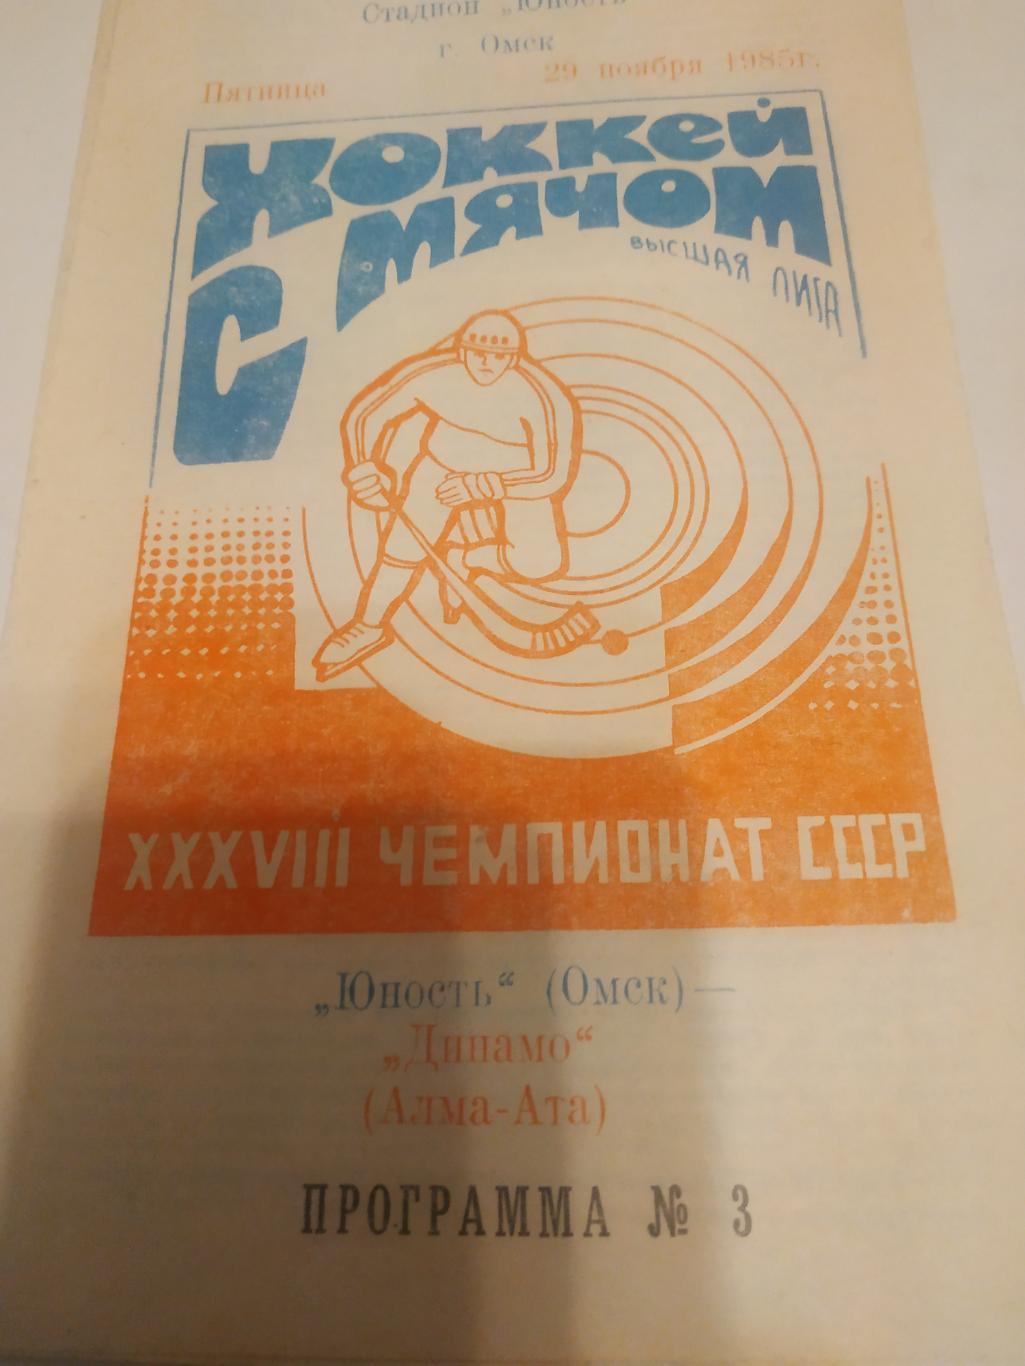 Юность (Омск) - Динамо (Алма - Ата). 29.11.1985.